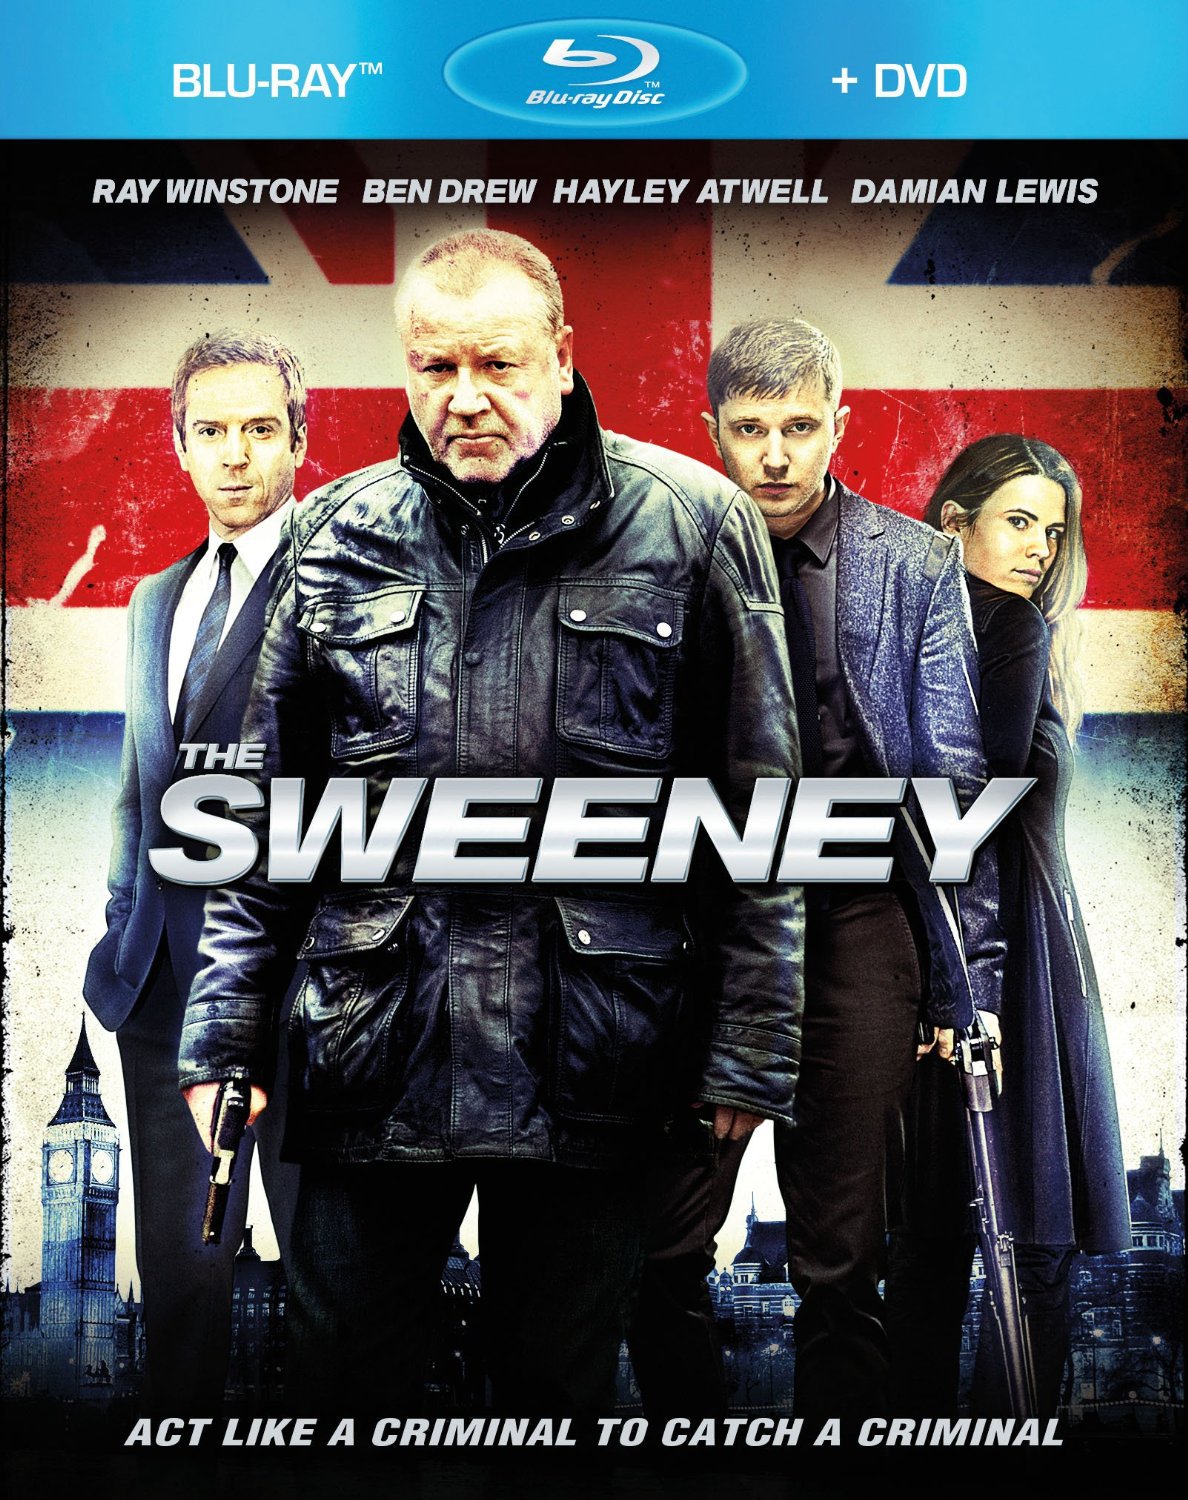 Sweeney, the